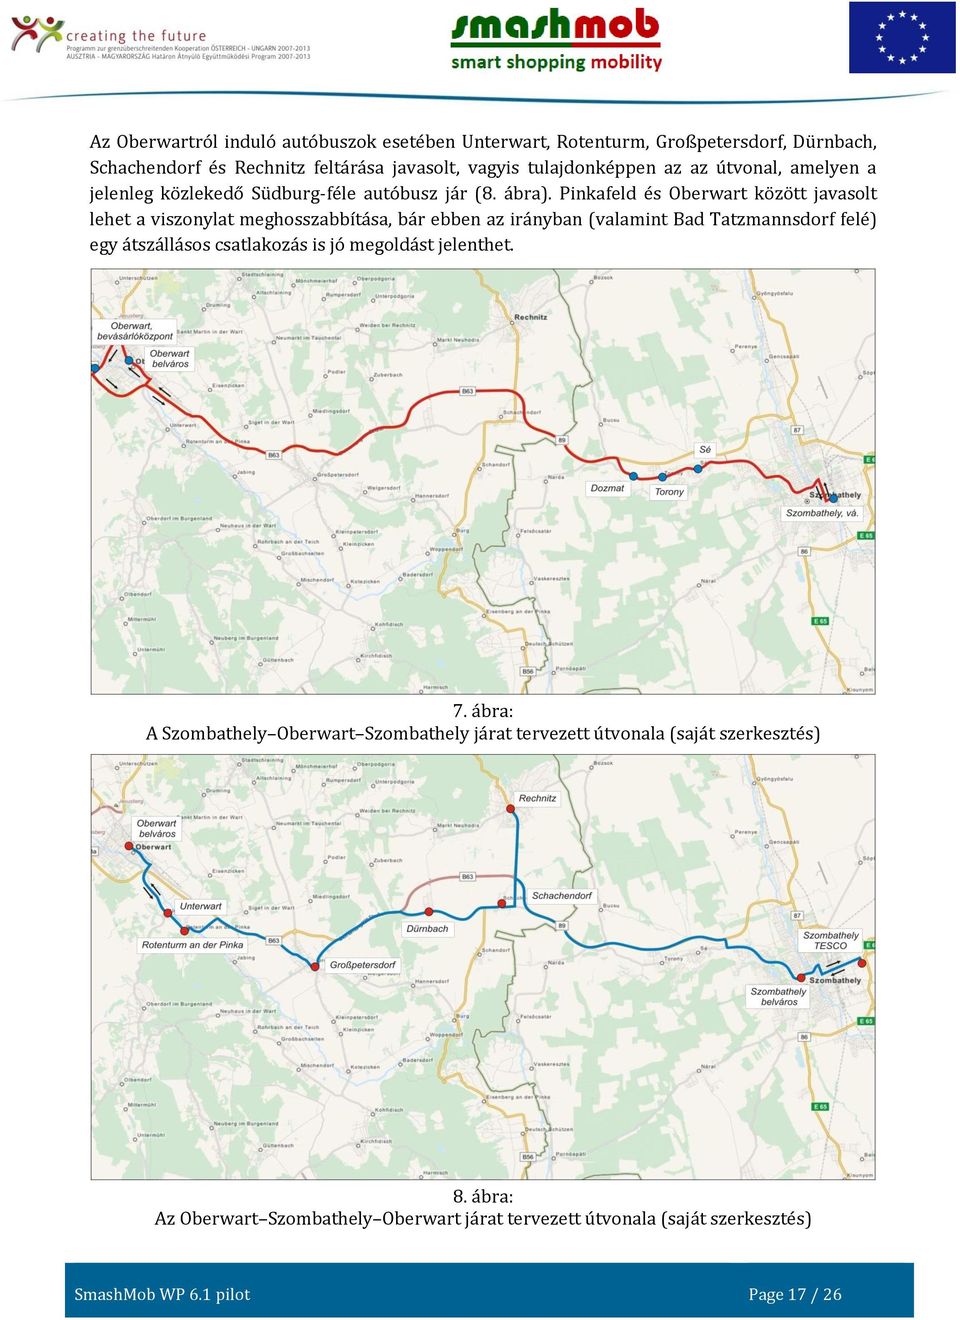 Pinkafeld és Oberwart között javasolt lehet a viszonylat meghosszabbítása, bár ebben az irányban (valamint Bad Tatzmannsdorf felé) egy átszállásos csatlakozás